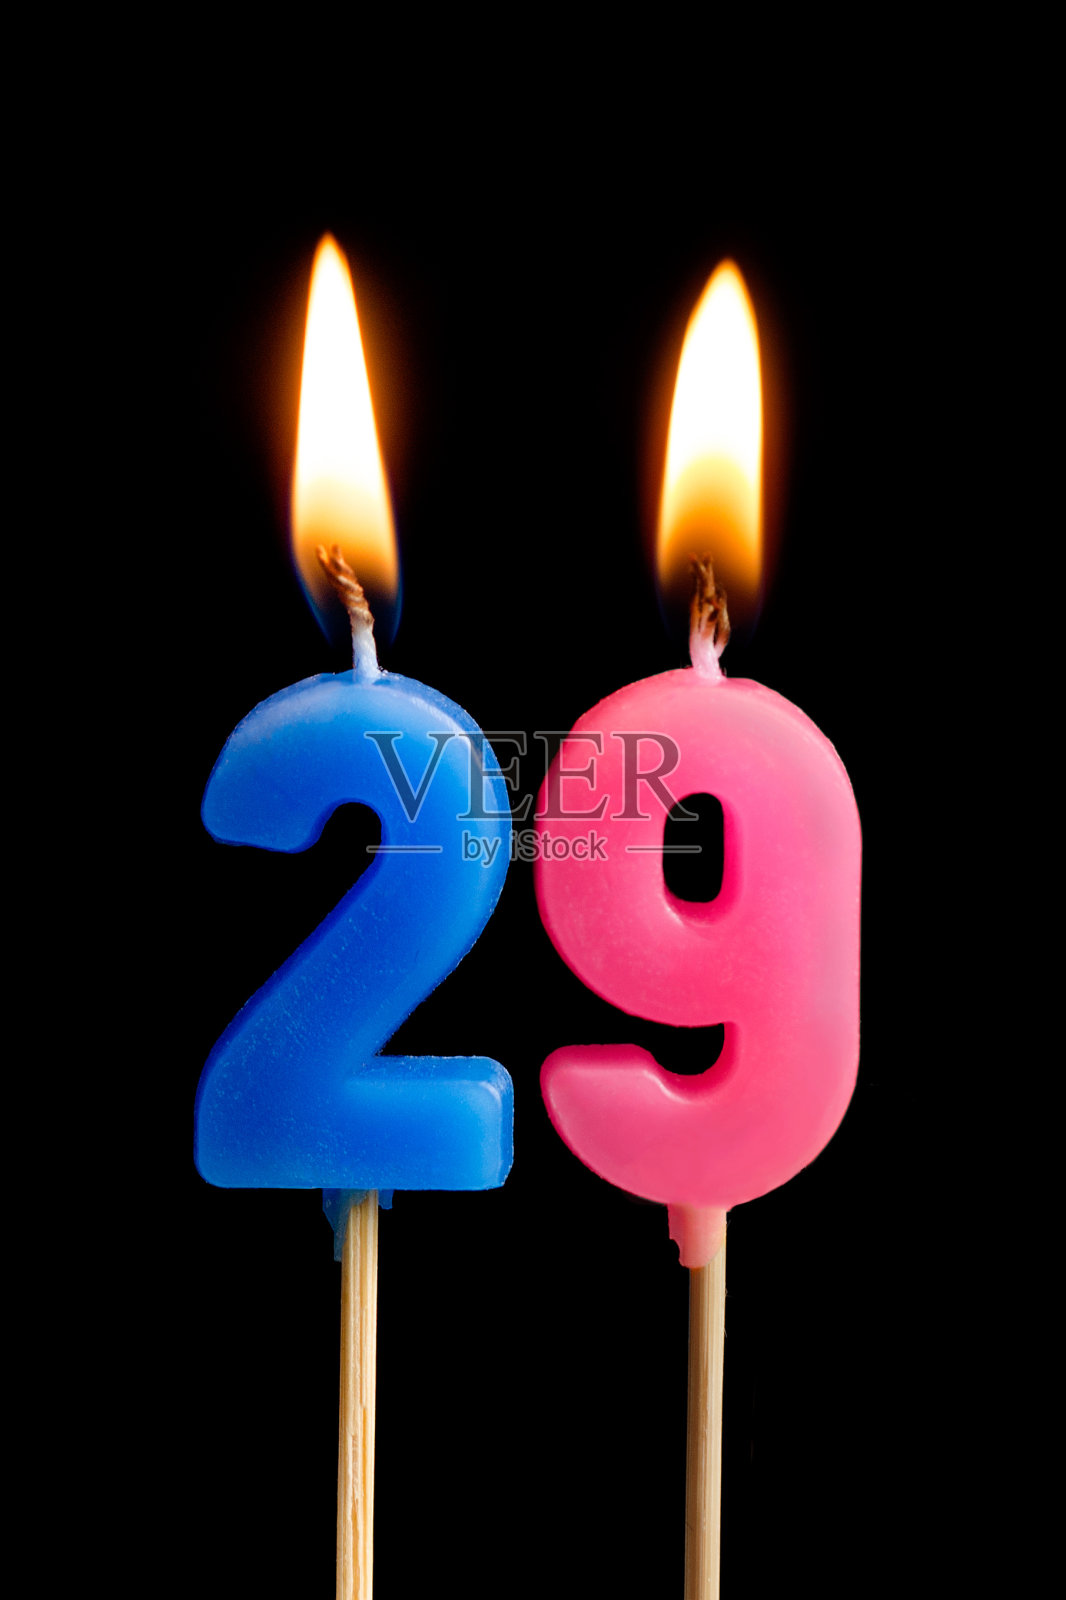 燃烧的蜡烛29 29(数字，日期)的形式为蛋糕孤立在黑色的背景。庆祝生日、周年纪念、重要日期、节日、餐桌摆设的概念照片摄影图片